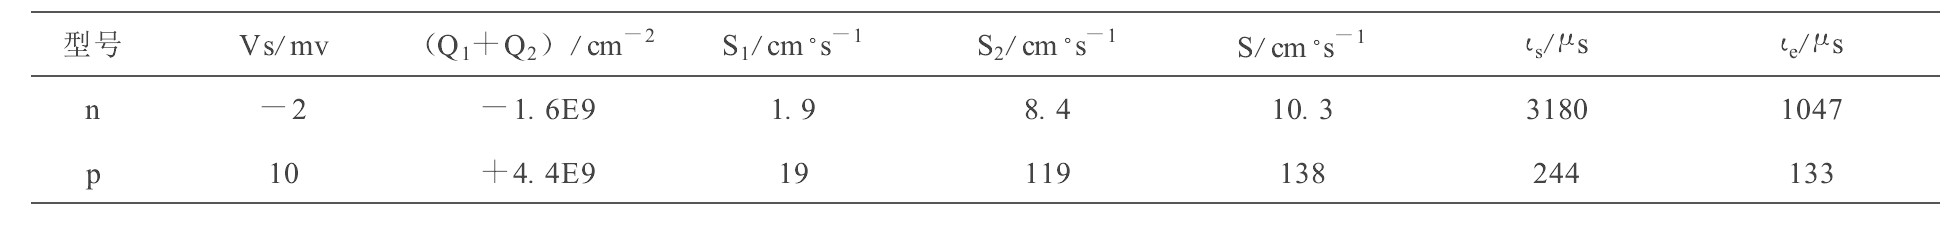 表2 p型与n型硅中表面势电荷复合速度与寿命Table 2 Surface potentials, carriers, combination velocities and lifetimes for p type and n type silicon wafers